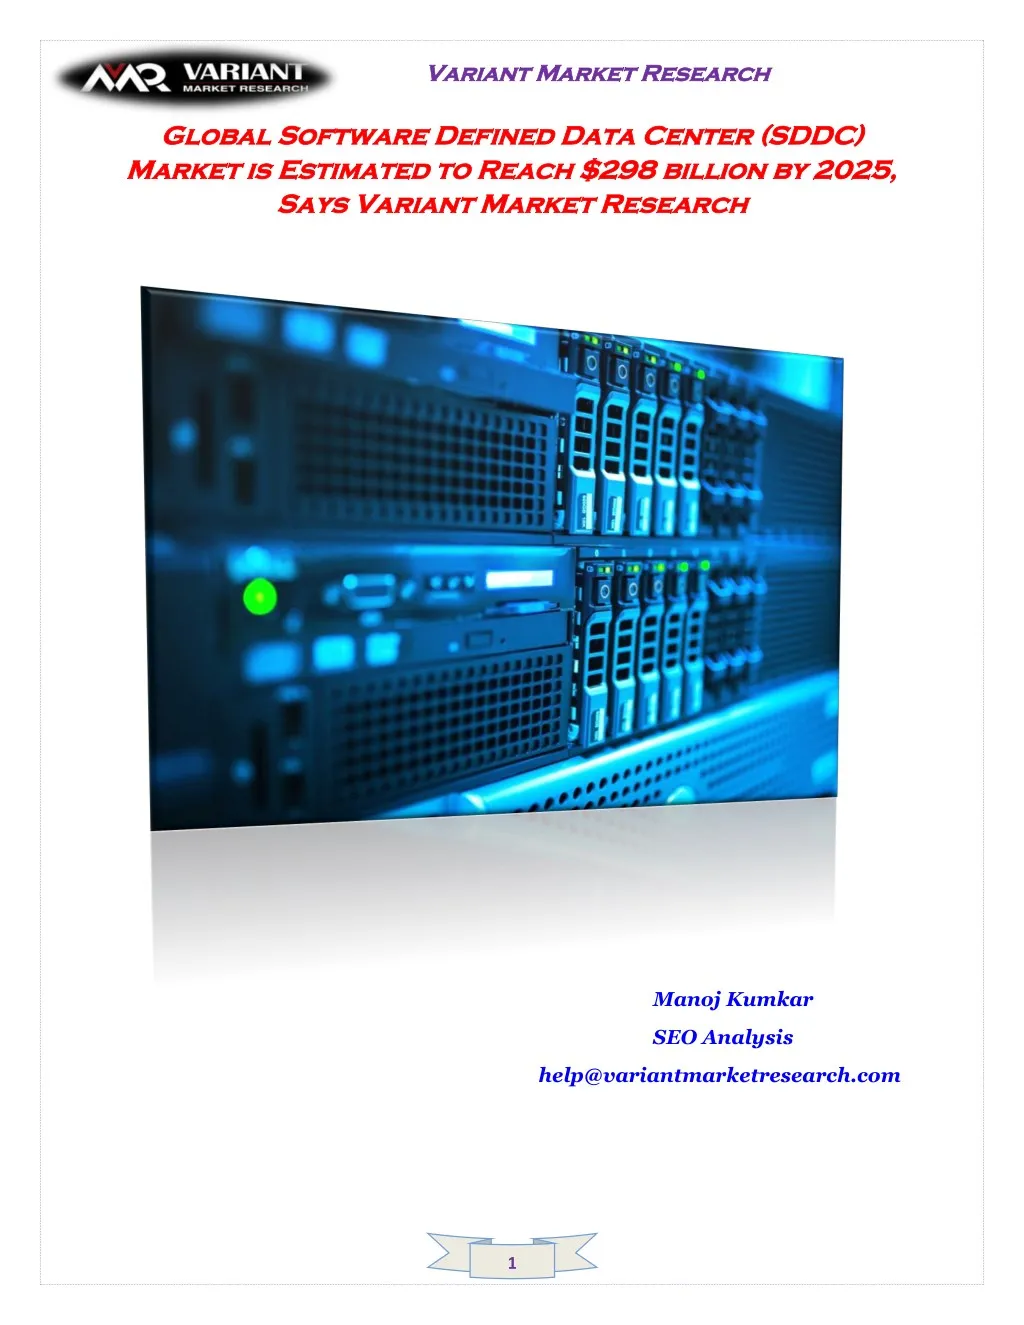 variant market research variant market research